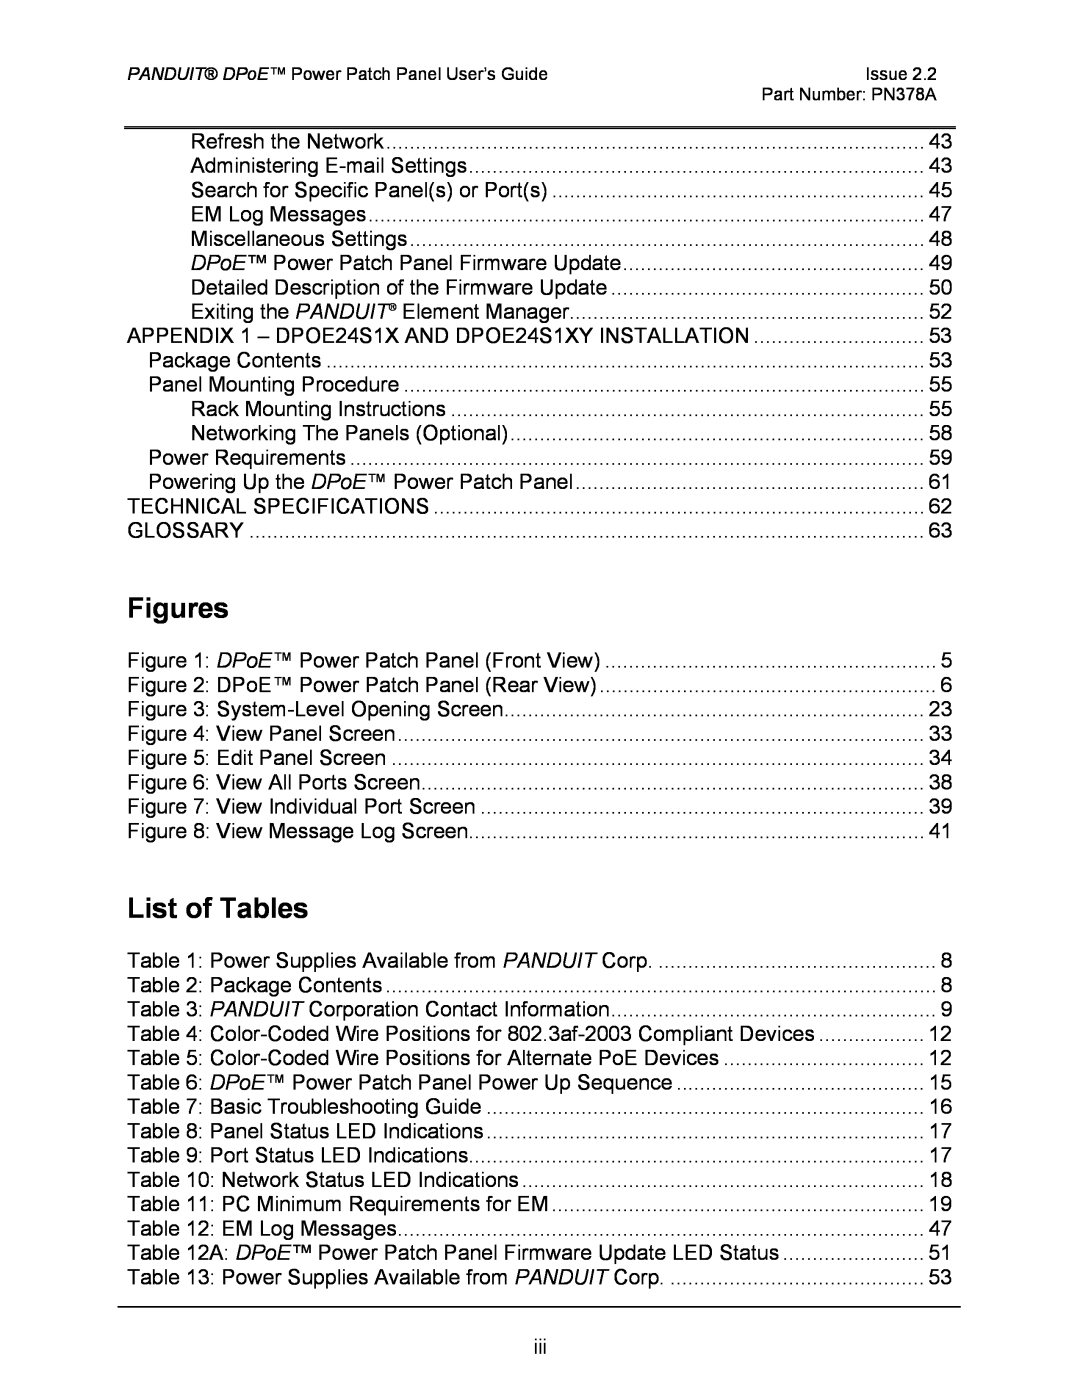 Panduit DPOE24S1XY, DPOE12U1XY, DPOE24U1XY manual Figures, List of Tables 